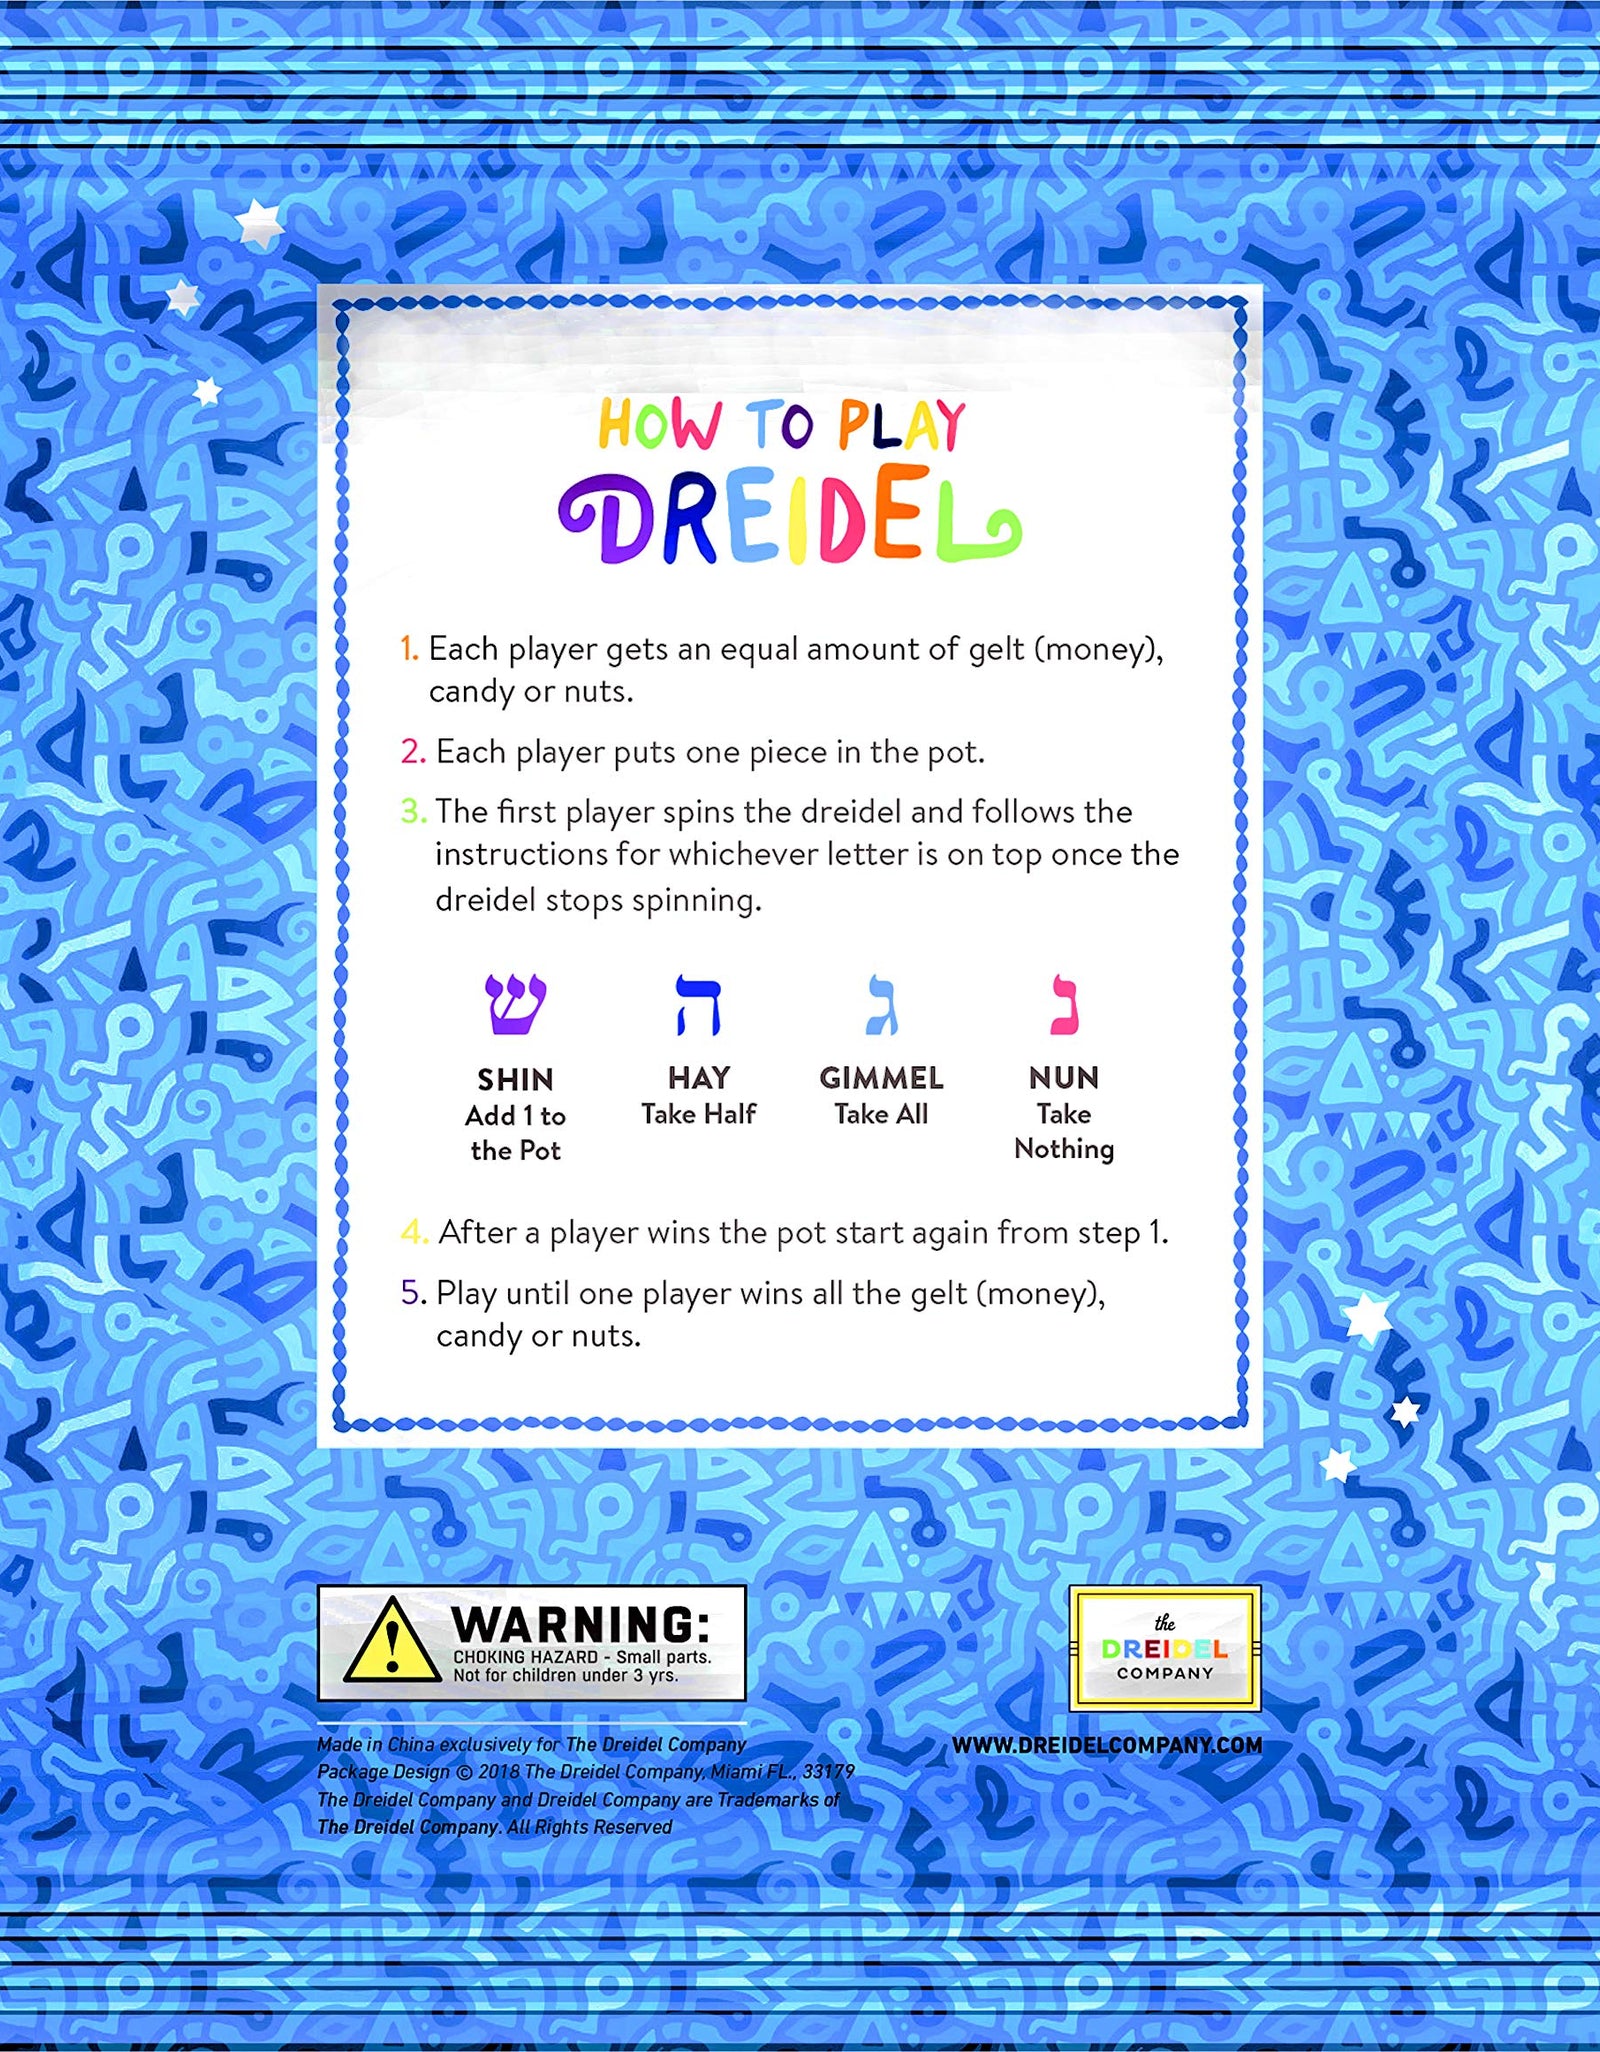 Let's Play Dreidel The Hanukkah Game Extra Large Blue & White Wood Dreidels - Instructions Included! - D10 (2-Pack XL Dreidels)